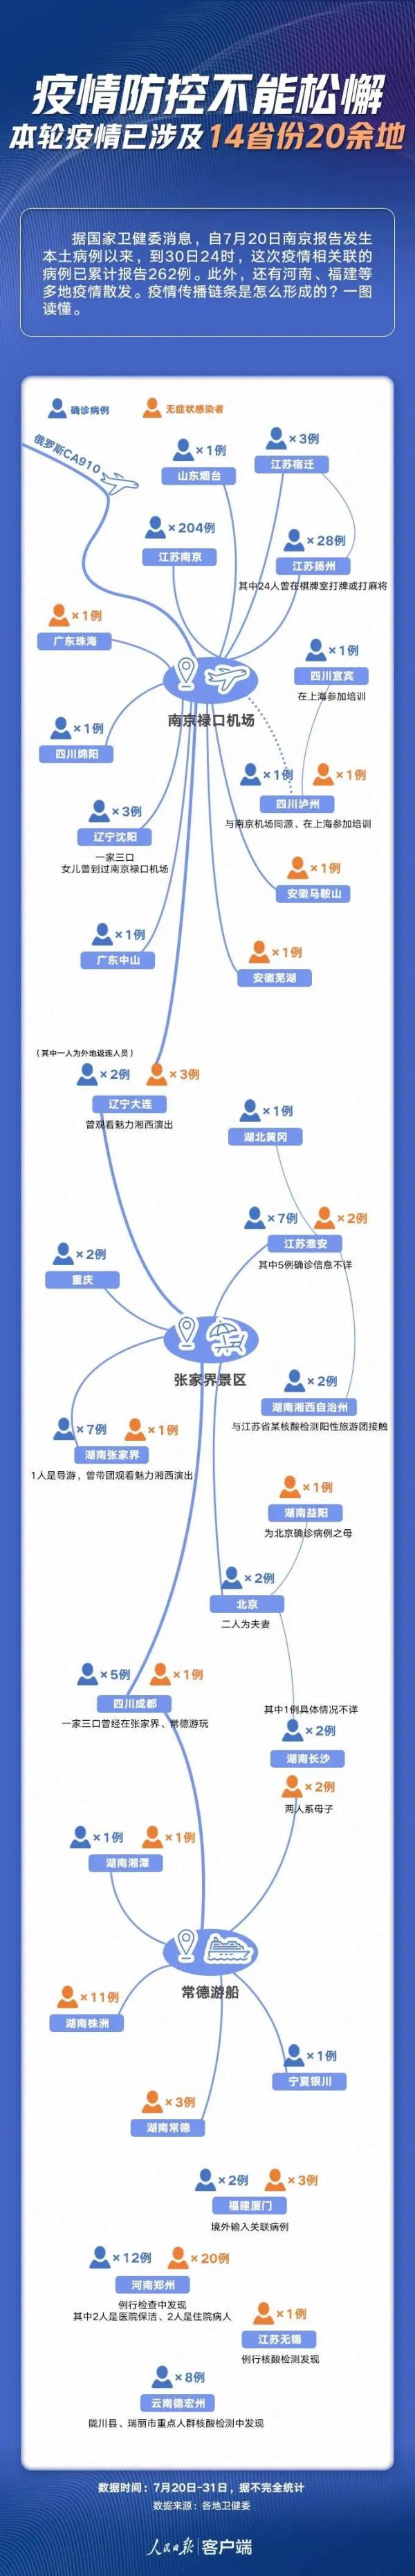 河南新增本土确诊1例无症状28例 8月2日郑州疫情最新消息今天